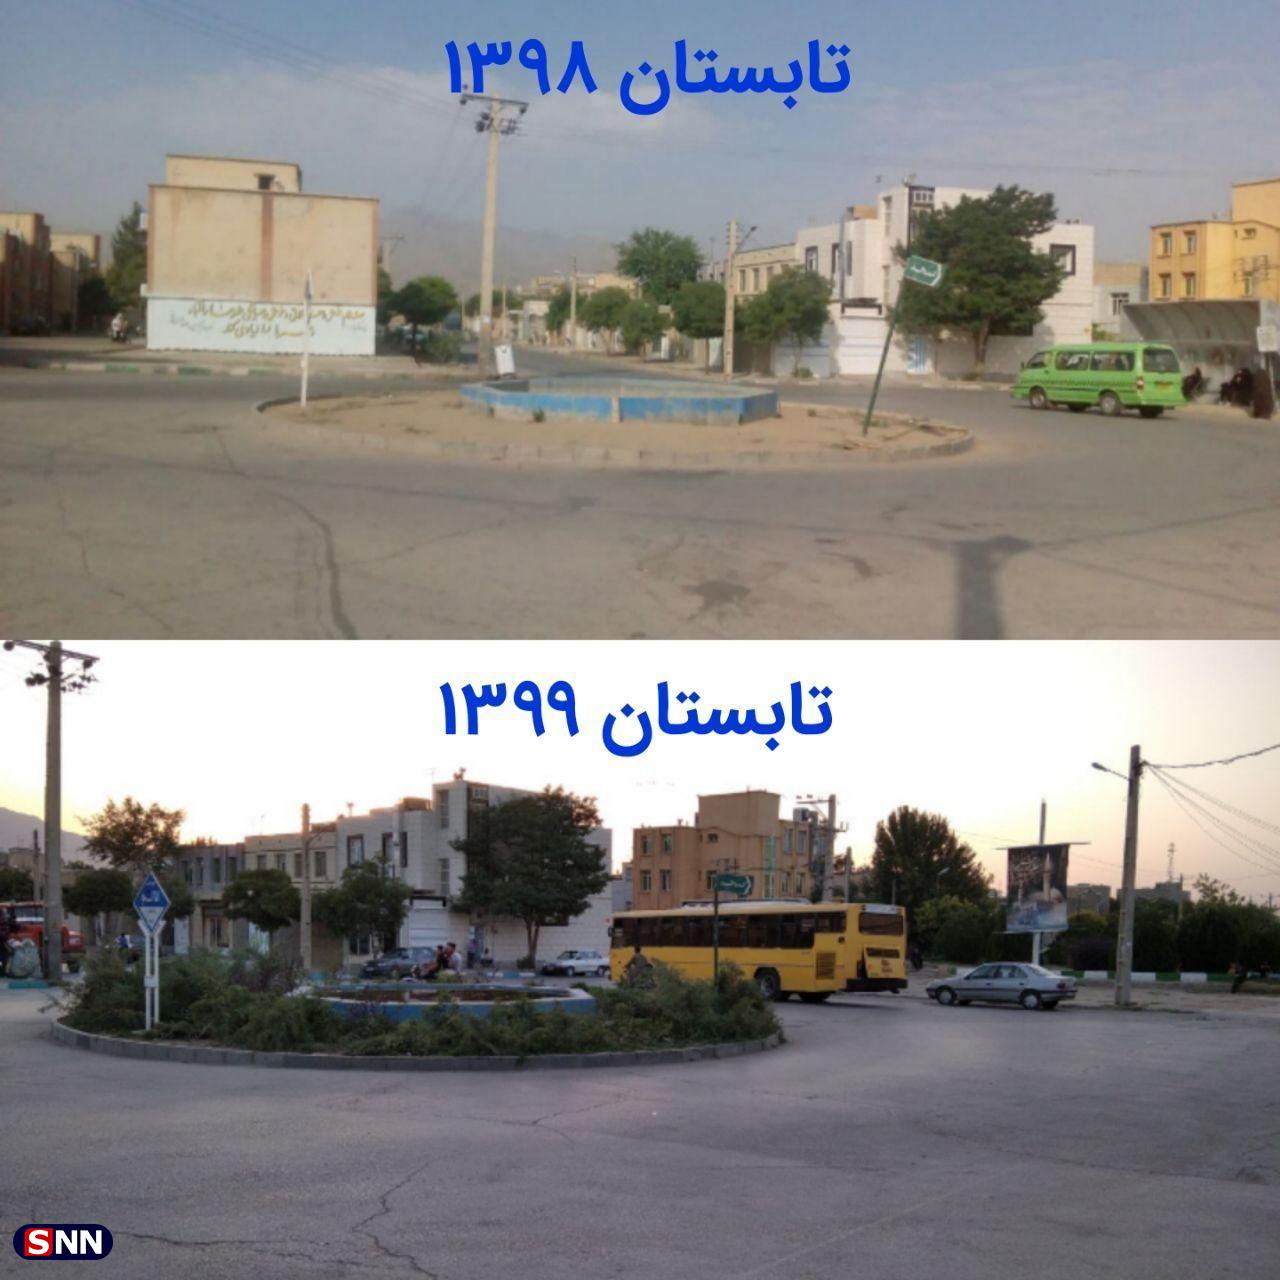 برخی از مشکلات مناطق محروم شهر همدان با پیگیری جریان دانشجویی حل شد